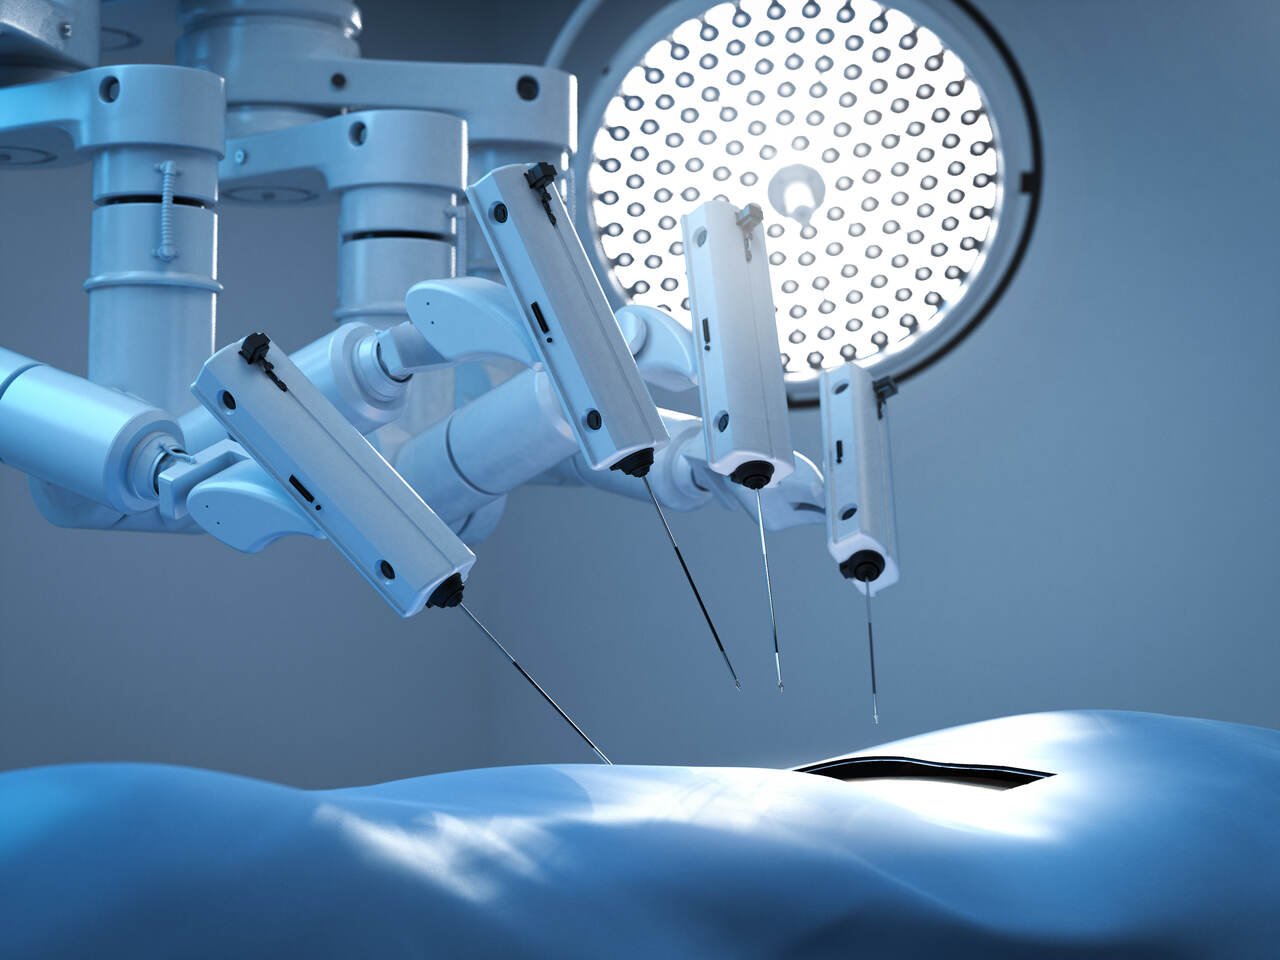 Urologia Goiânia - Doenças tratadas com cirurgia robótica de rim